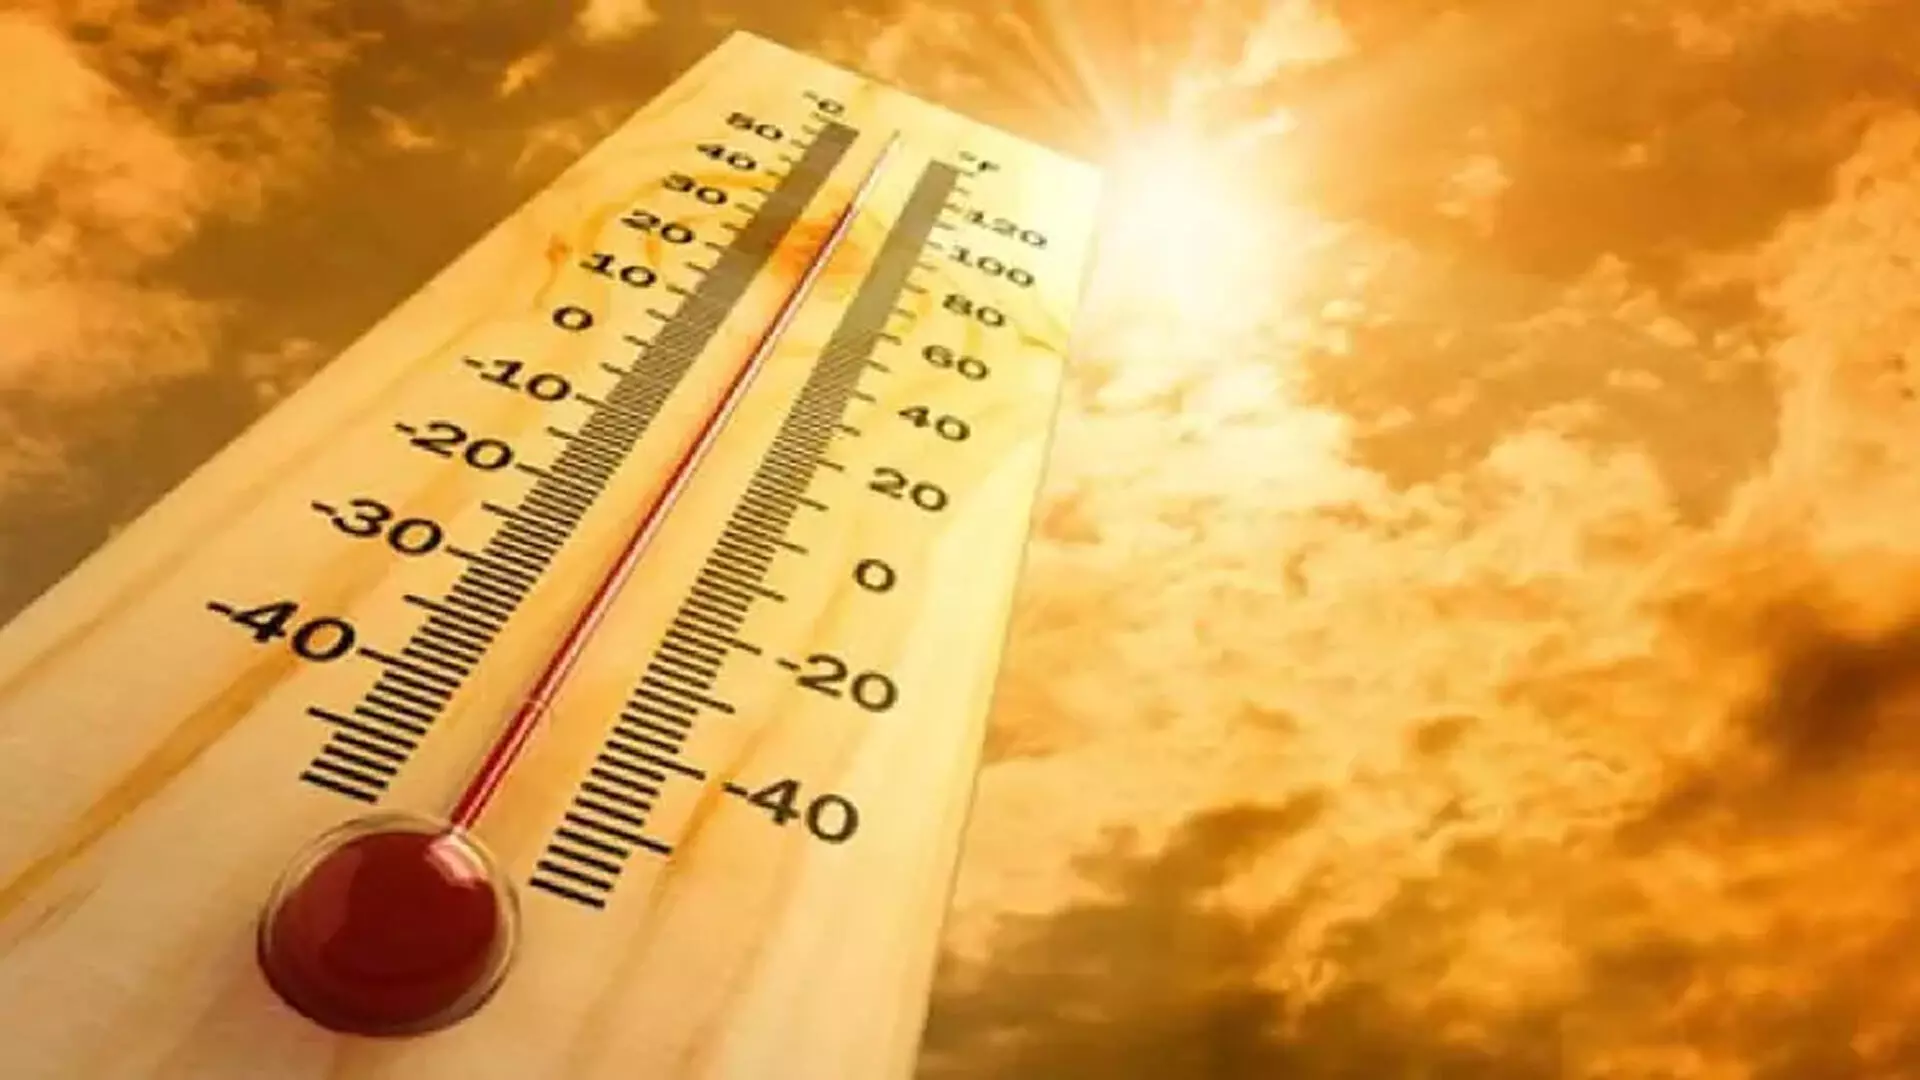 RMC ने अगले कुछ दिनों में तापमान में मामूली गिरावट का अनुमान लगाया